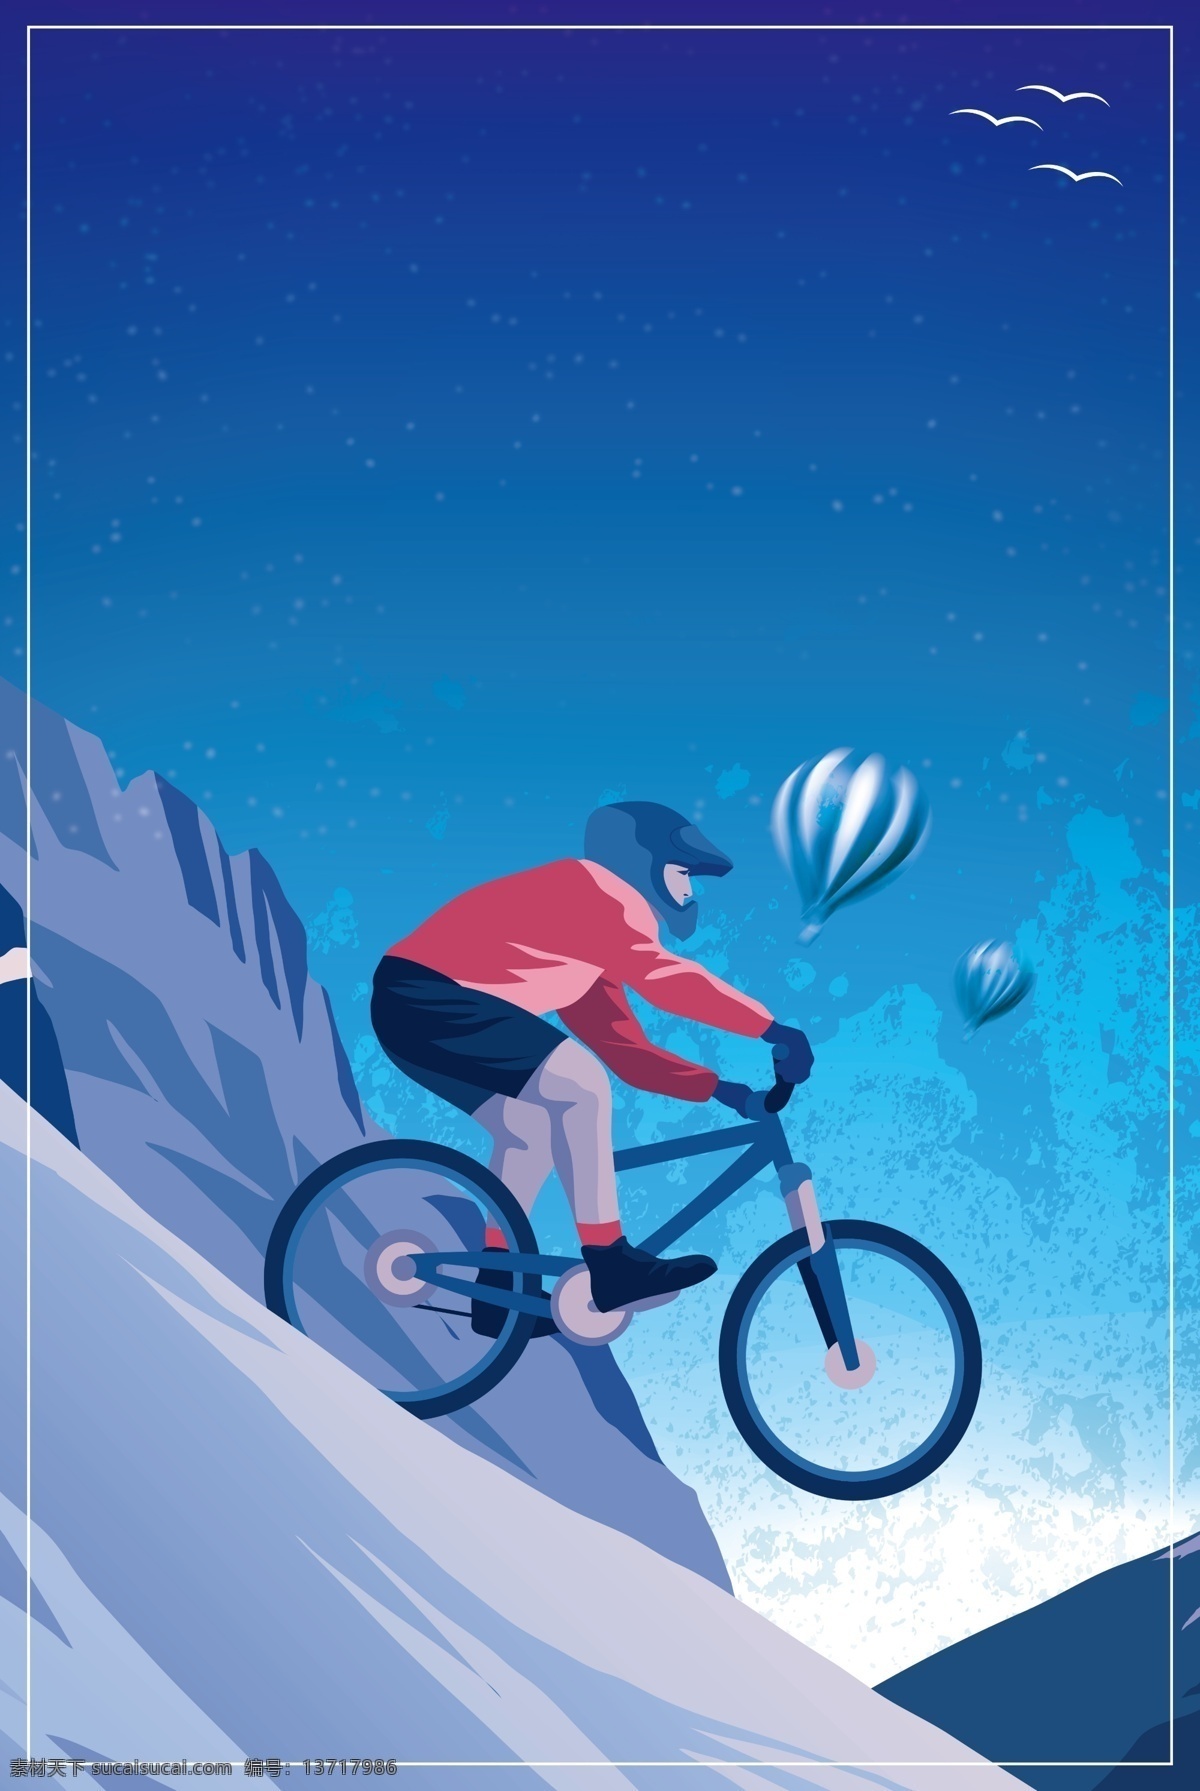 蓝色 大气 世界 自行车赛 背景 自行车背景 车广告背景 通用背景 广告背景 自行车锦标赛